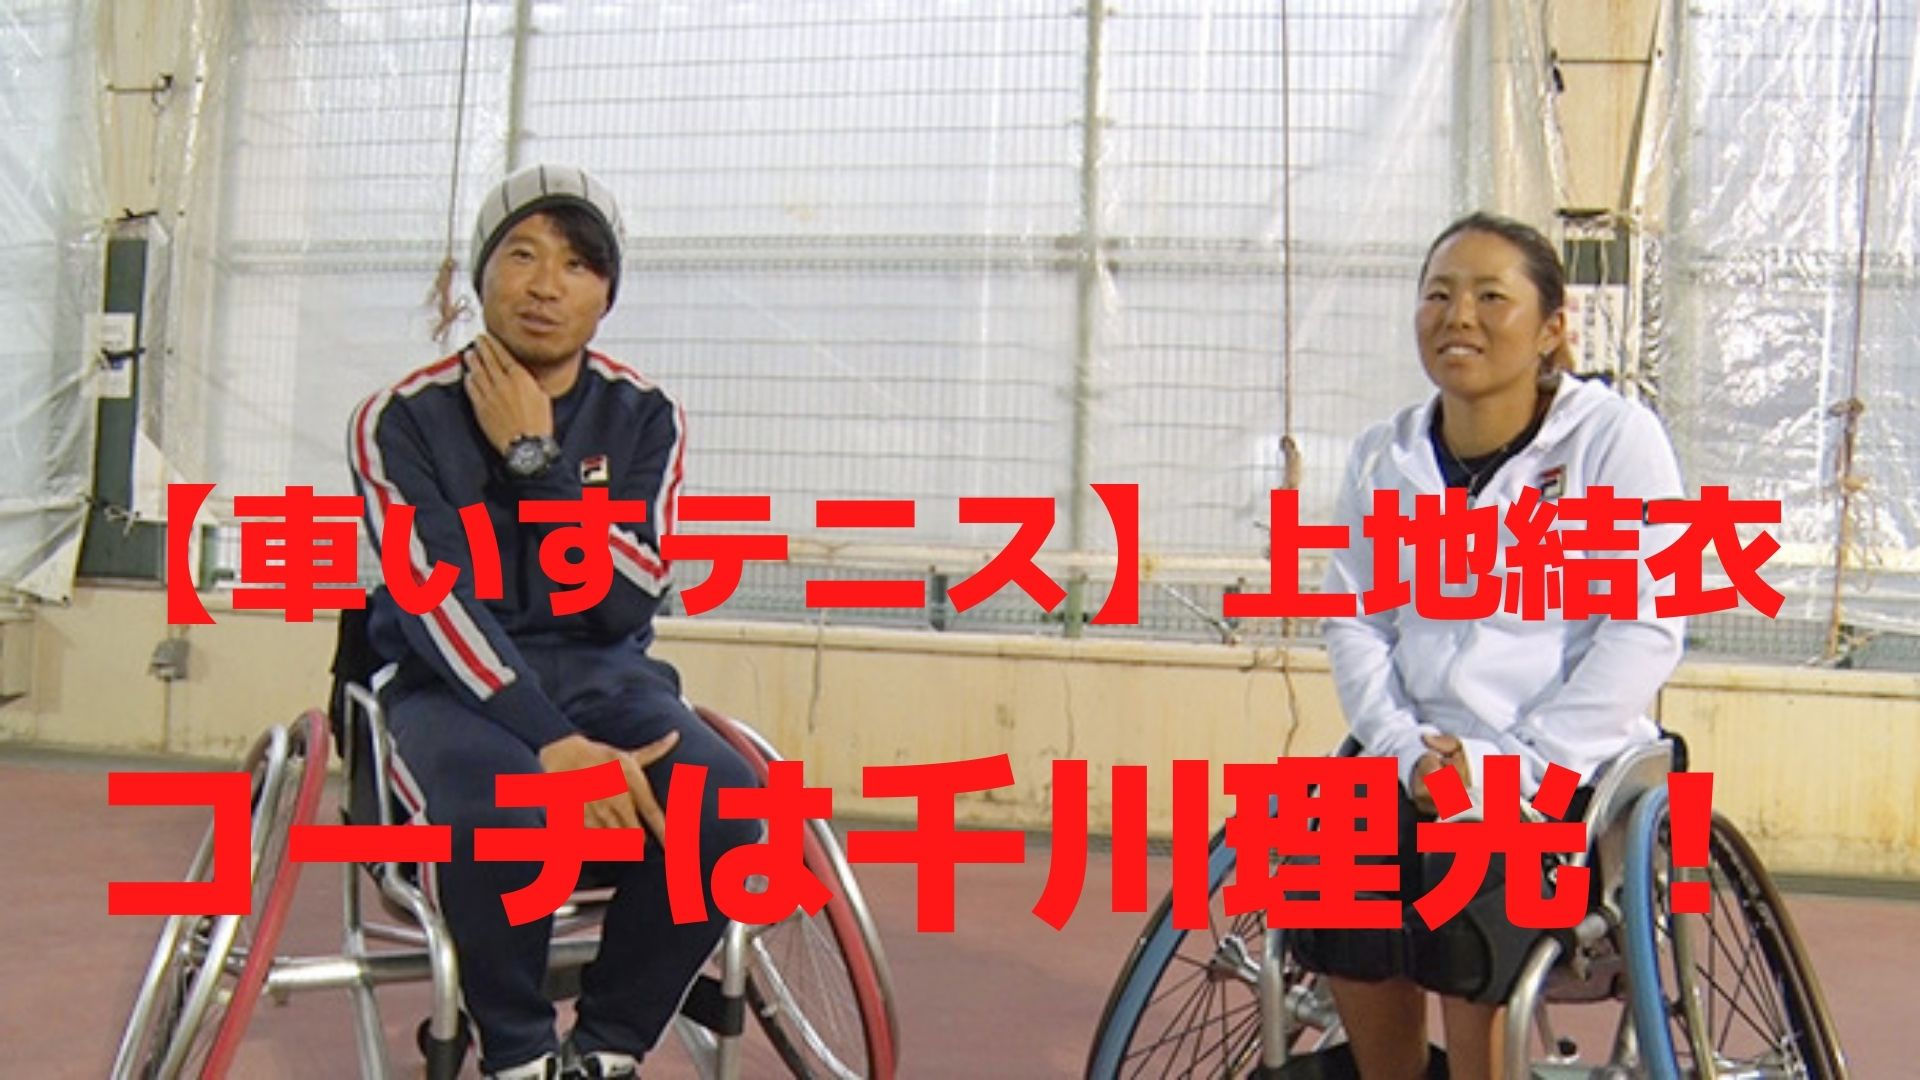 wheelchair-tennis-yui-kamiji-coach